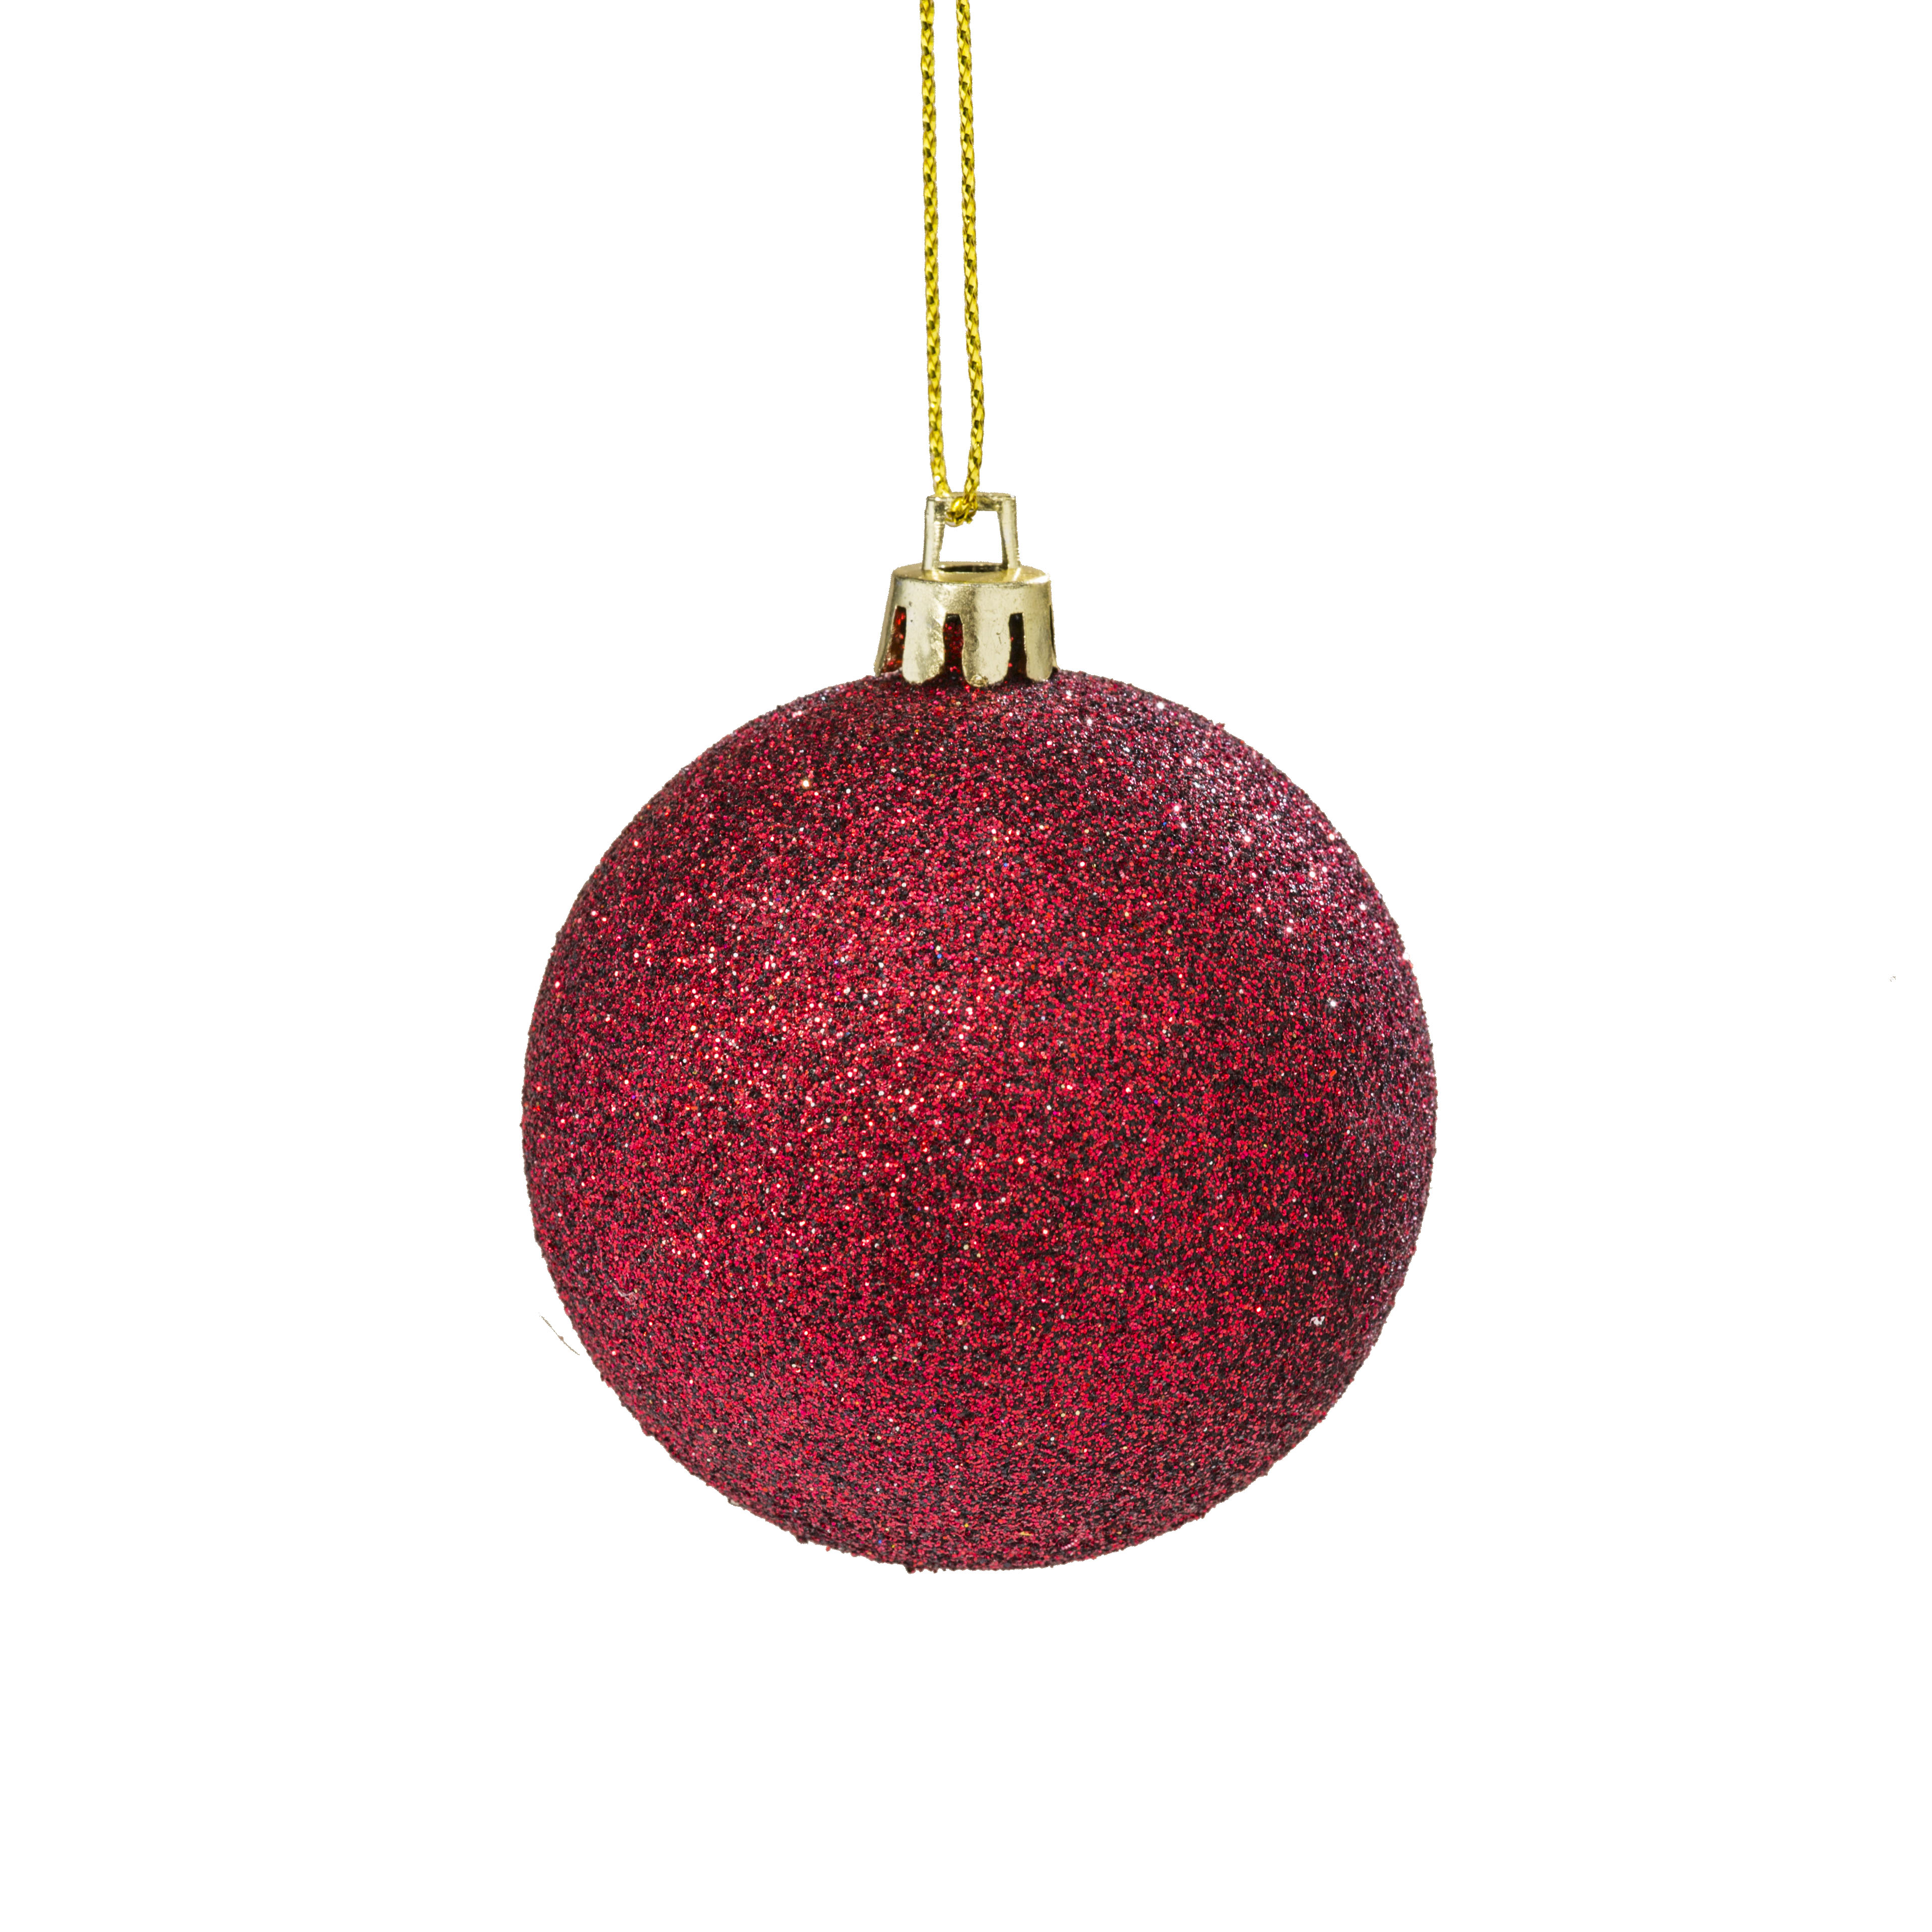 Hänger Kugel Marsala rot gold Weihnachtskugeln, Christbaumkugeln, Weihnachtsbaumkugeln